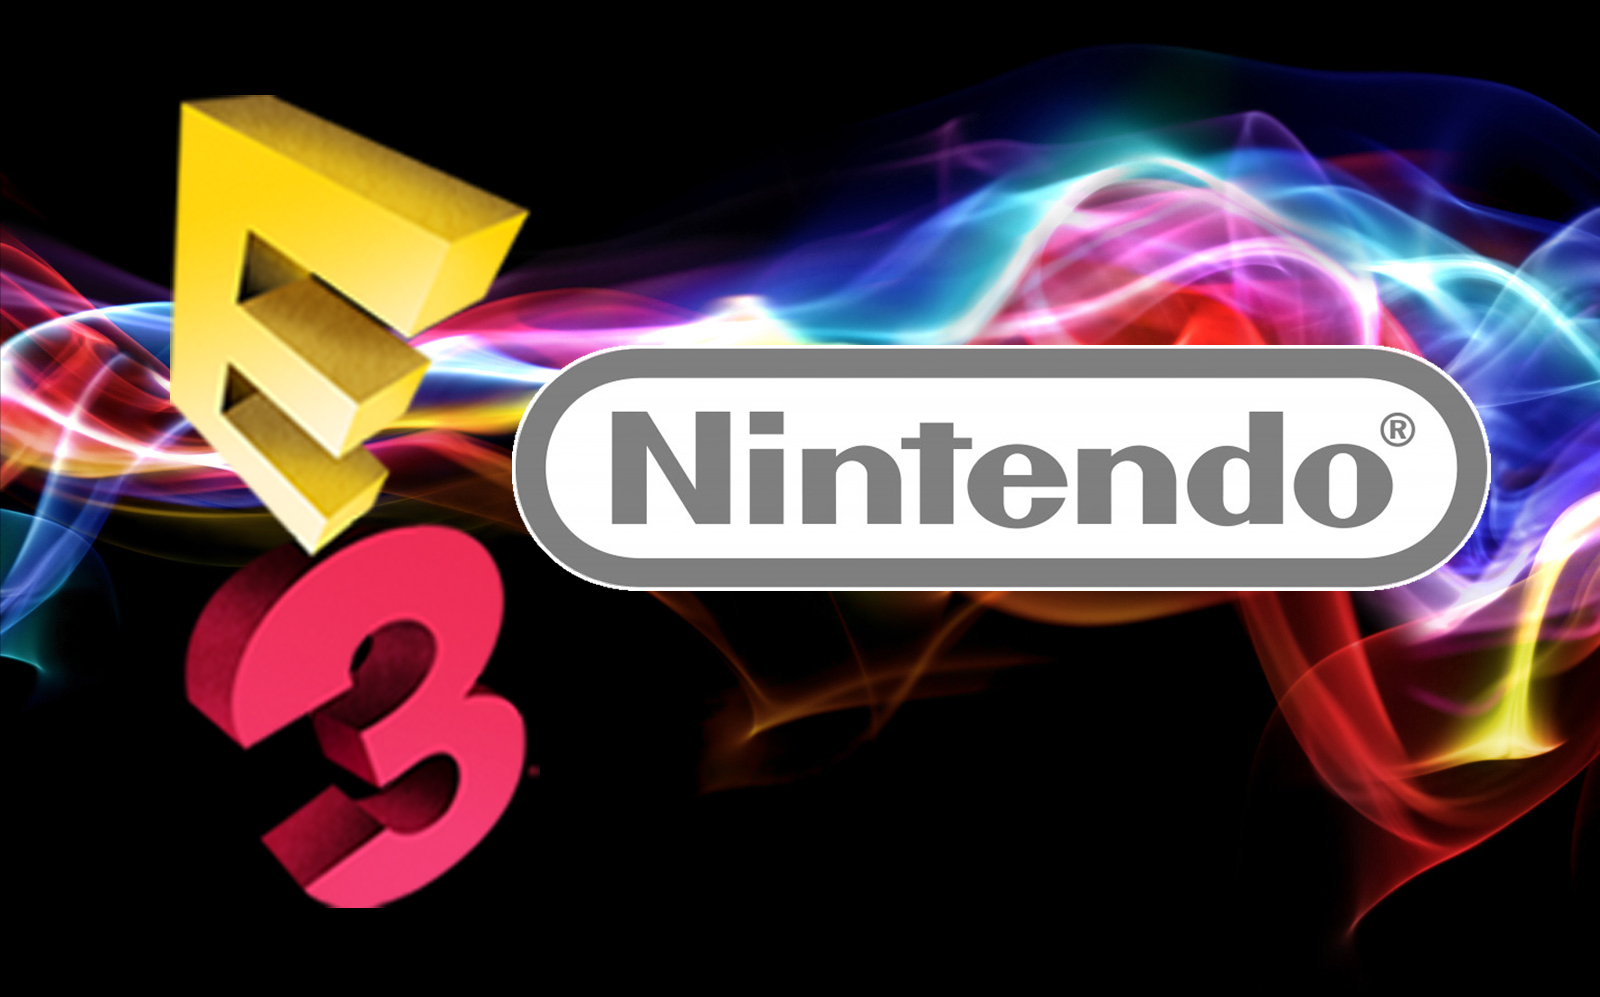 Nintendo Direct E3 2013 Liveblog